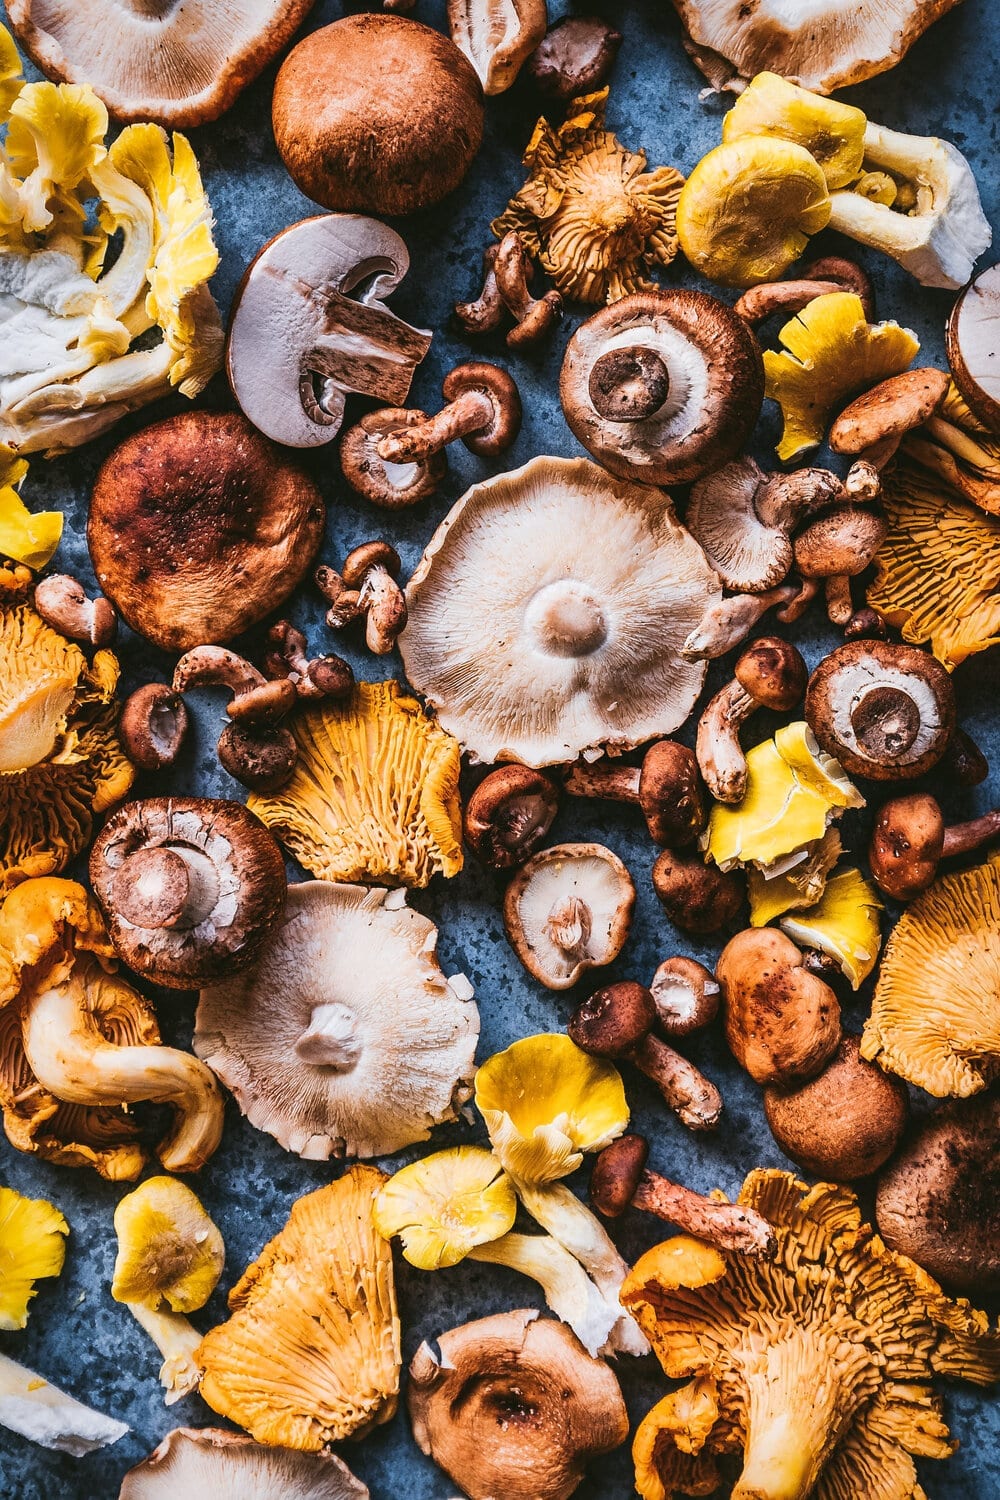 beautiful food photo of wild mushroom varieties, including chanterelle mushrooms, oyster mushrooms, and shiitake mushrooms.